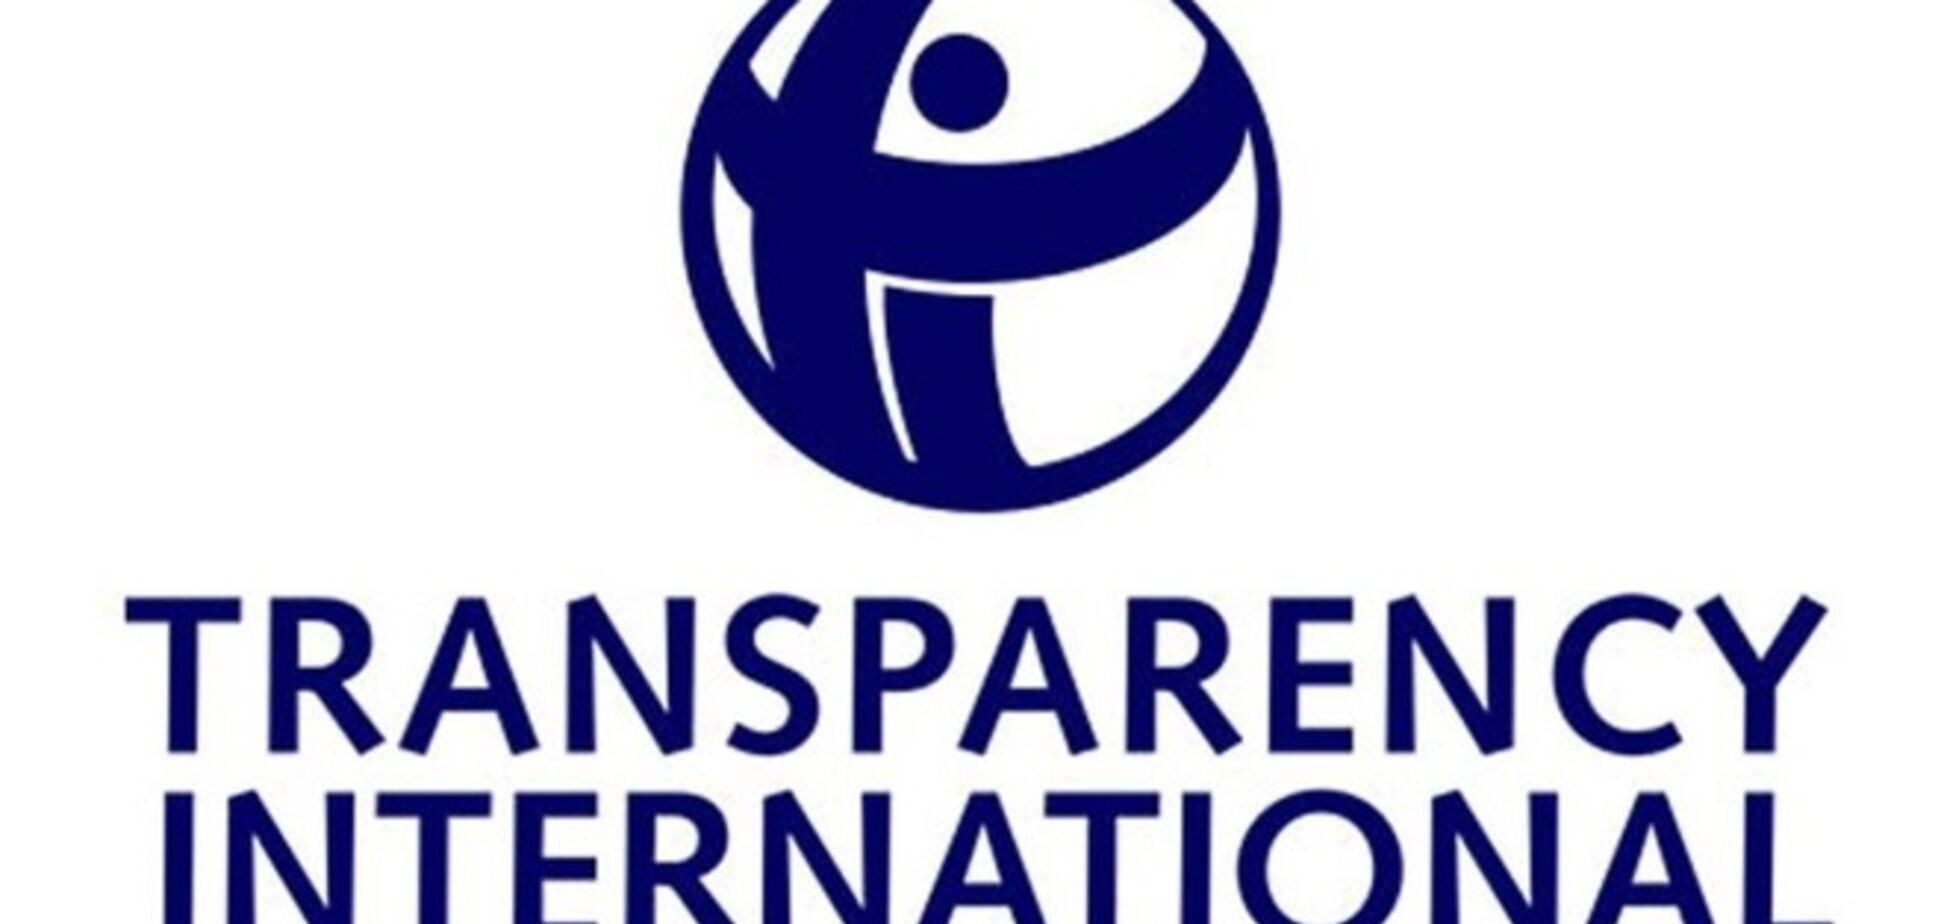 В московском офисе Transparency International проходит обыск